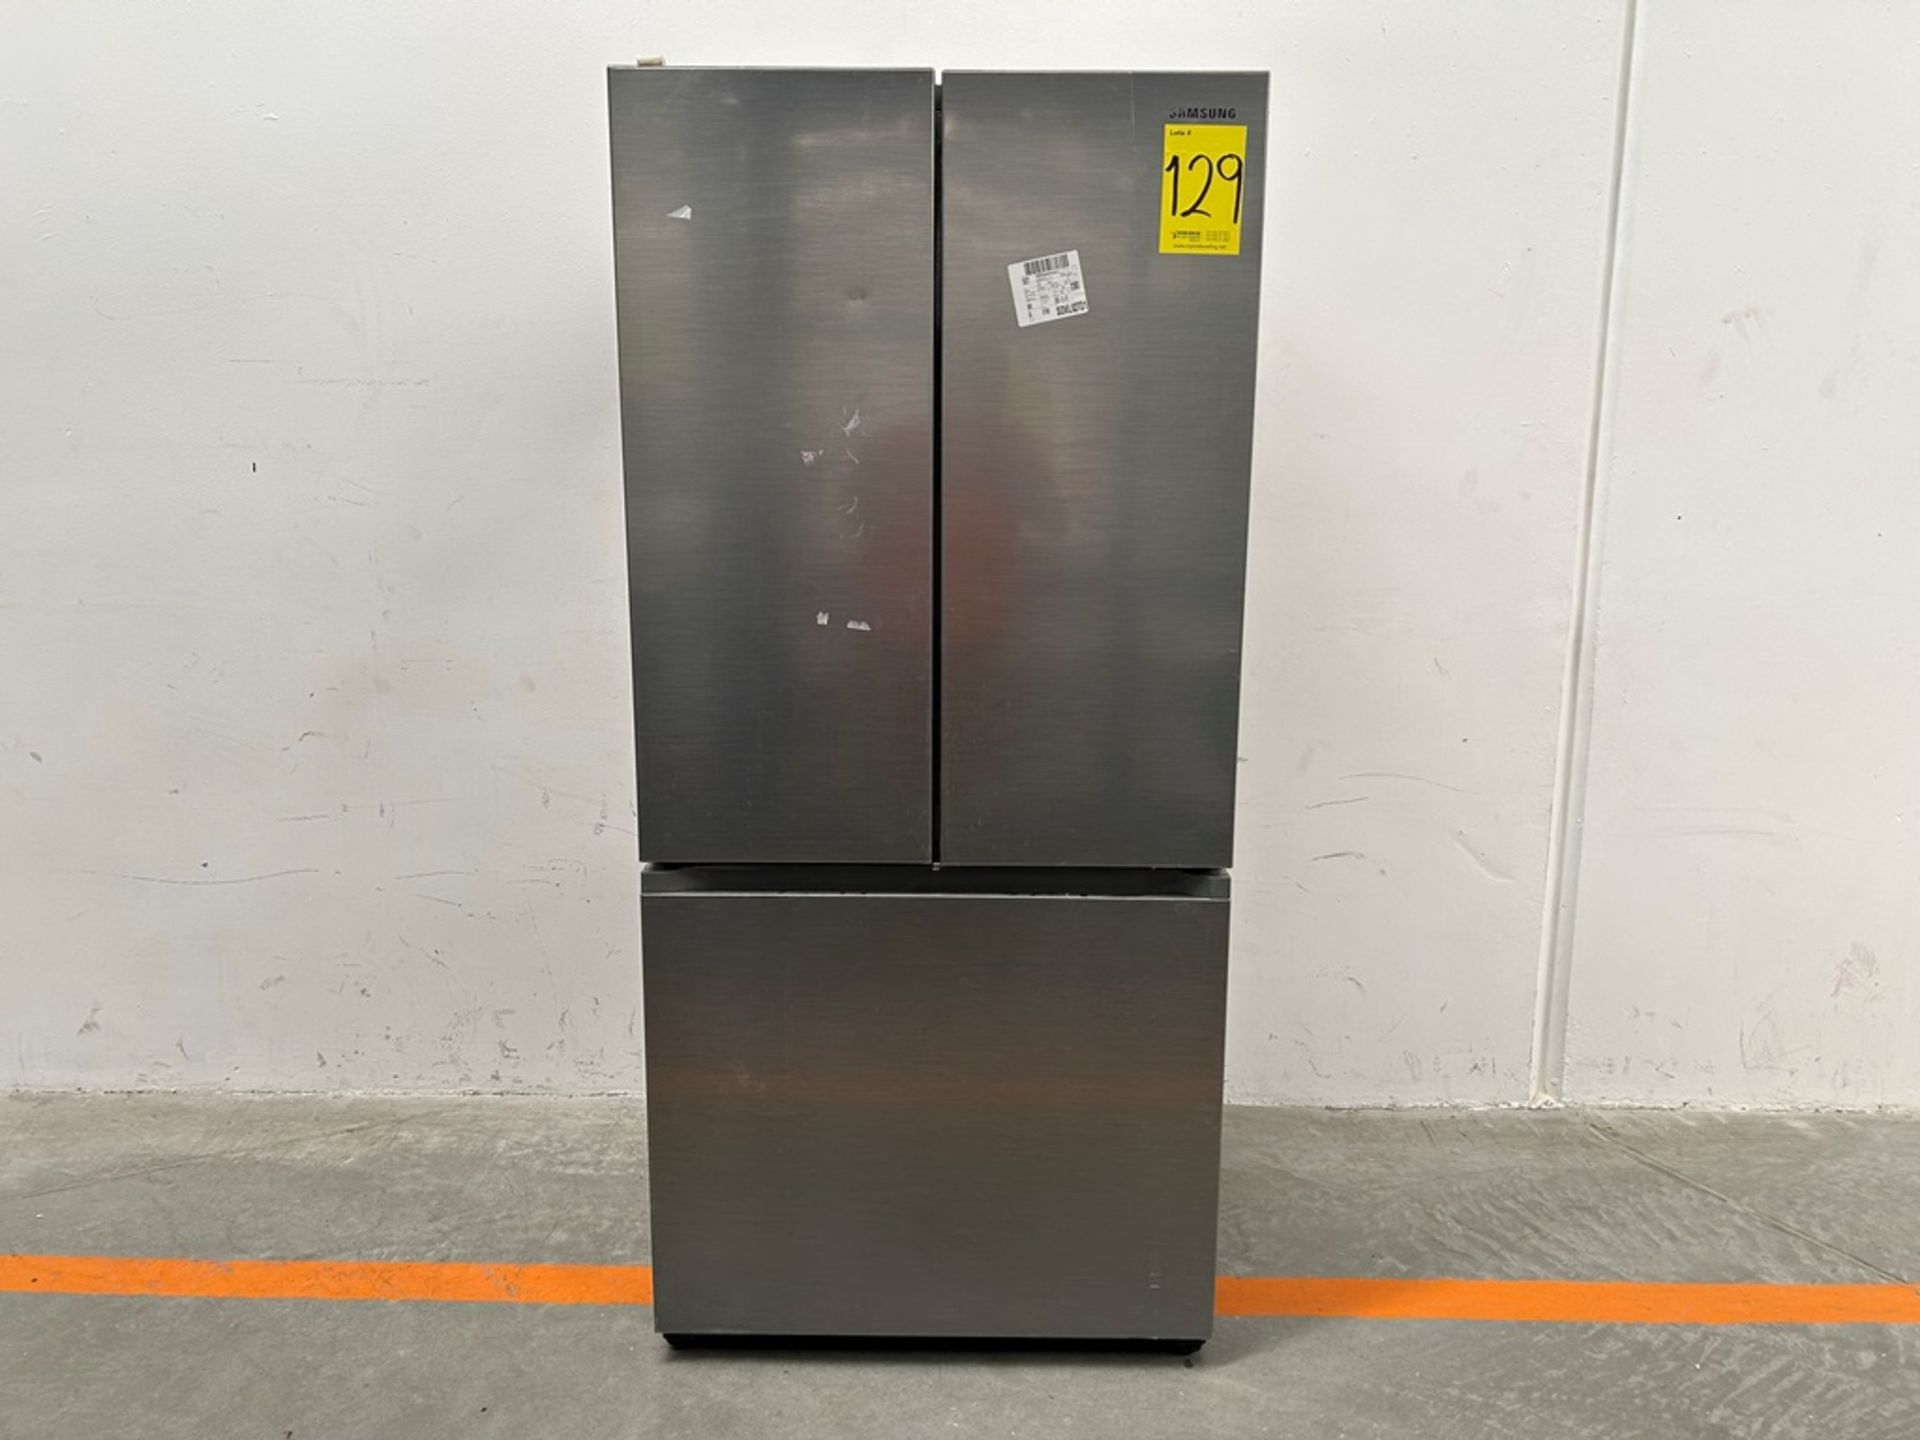 (NUEVO) Refrigerador Marca SAMSUNG, Modelo RF25C5151S9, Serie 100036K, Color GRIS